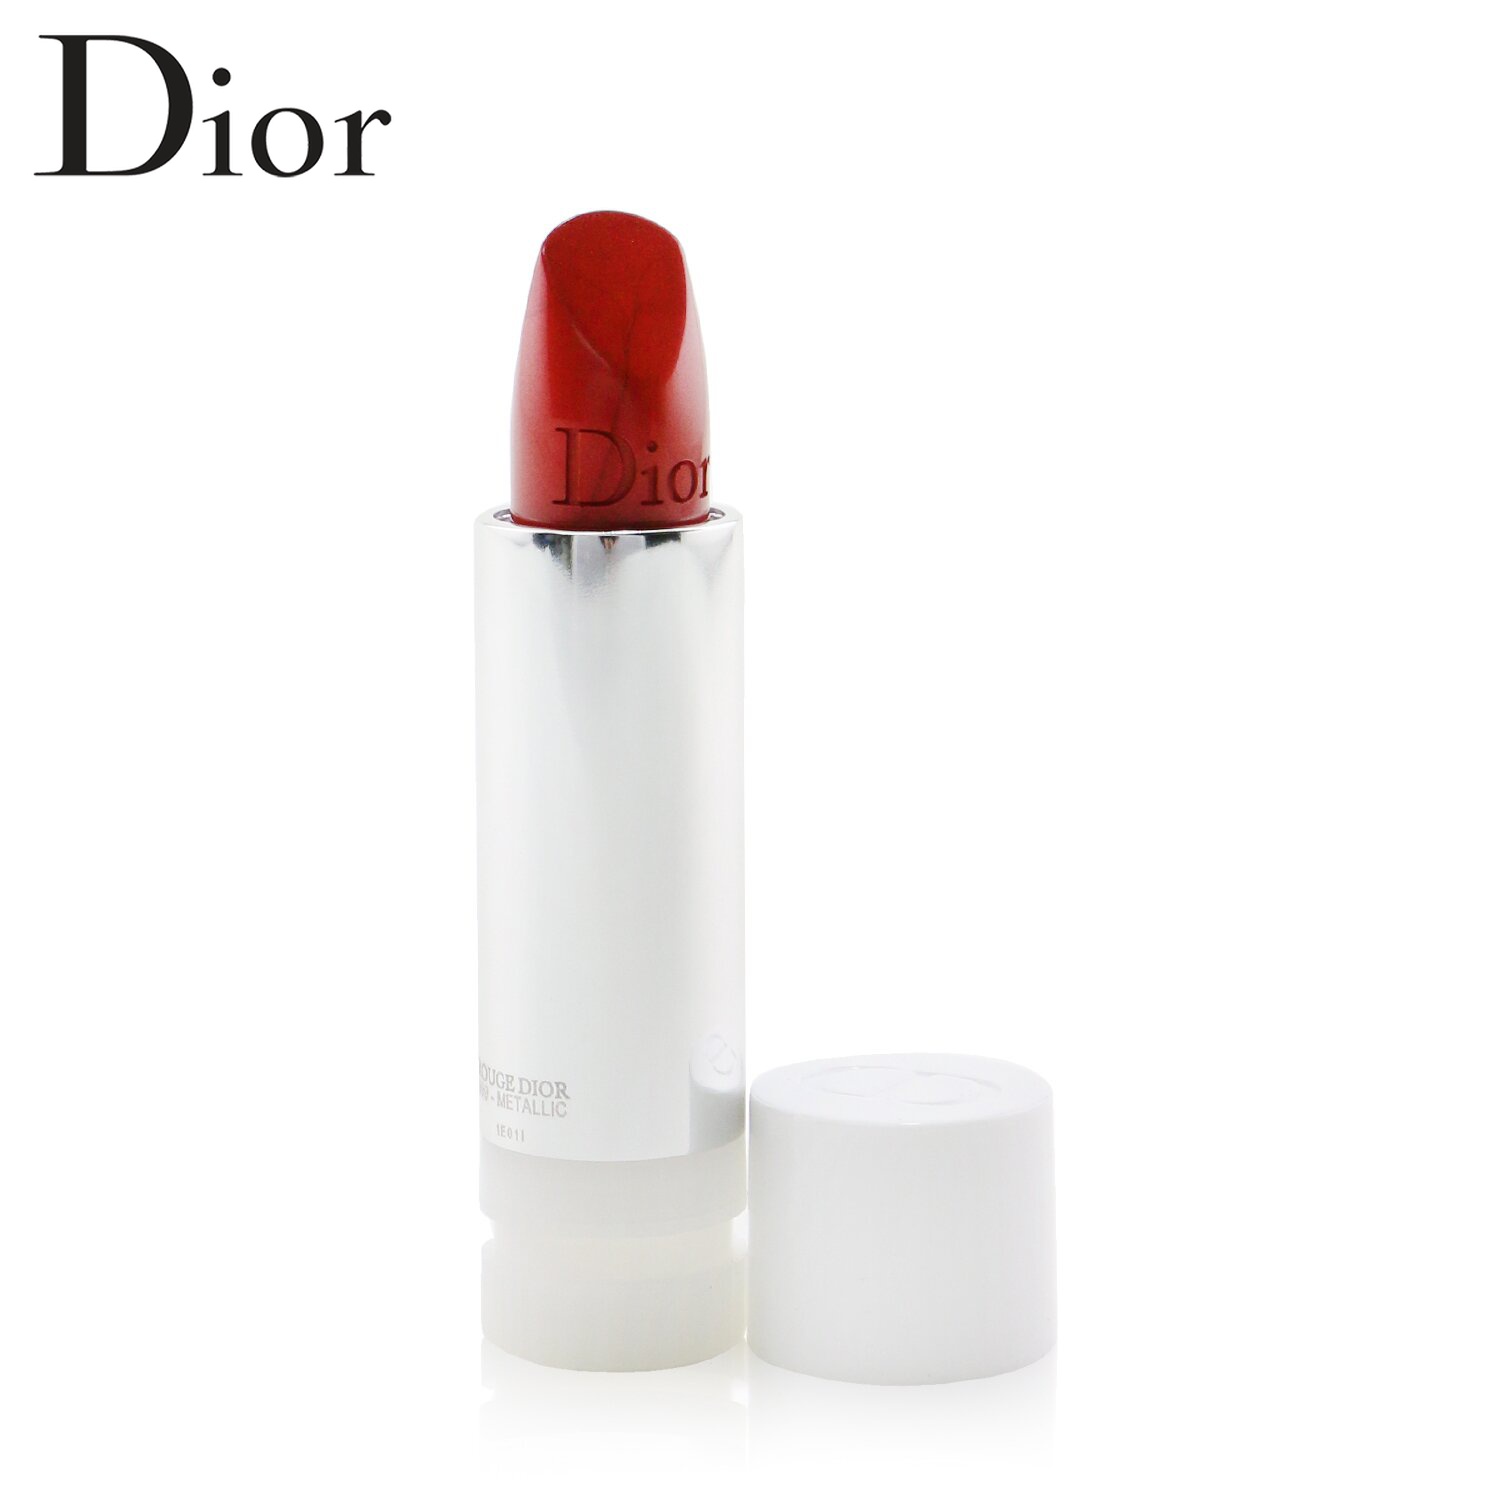 クリスチャンディオール リップスティック Christian Dior 口紅 Rouge Couture Colour Refillable Lipstick Refill 999 Metallic 3 5g メイクアップ リップ 落ちにくい 誕生日プレゼント ギフト 人気 ブランド コスメ 高価値